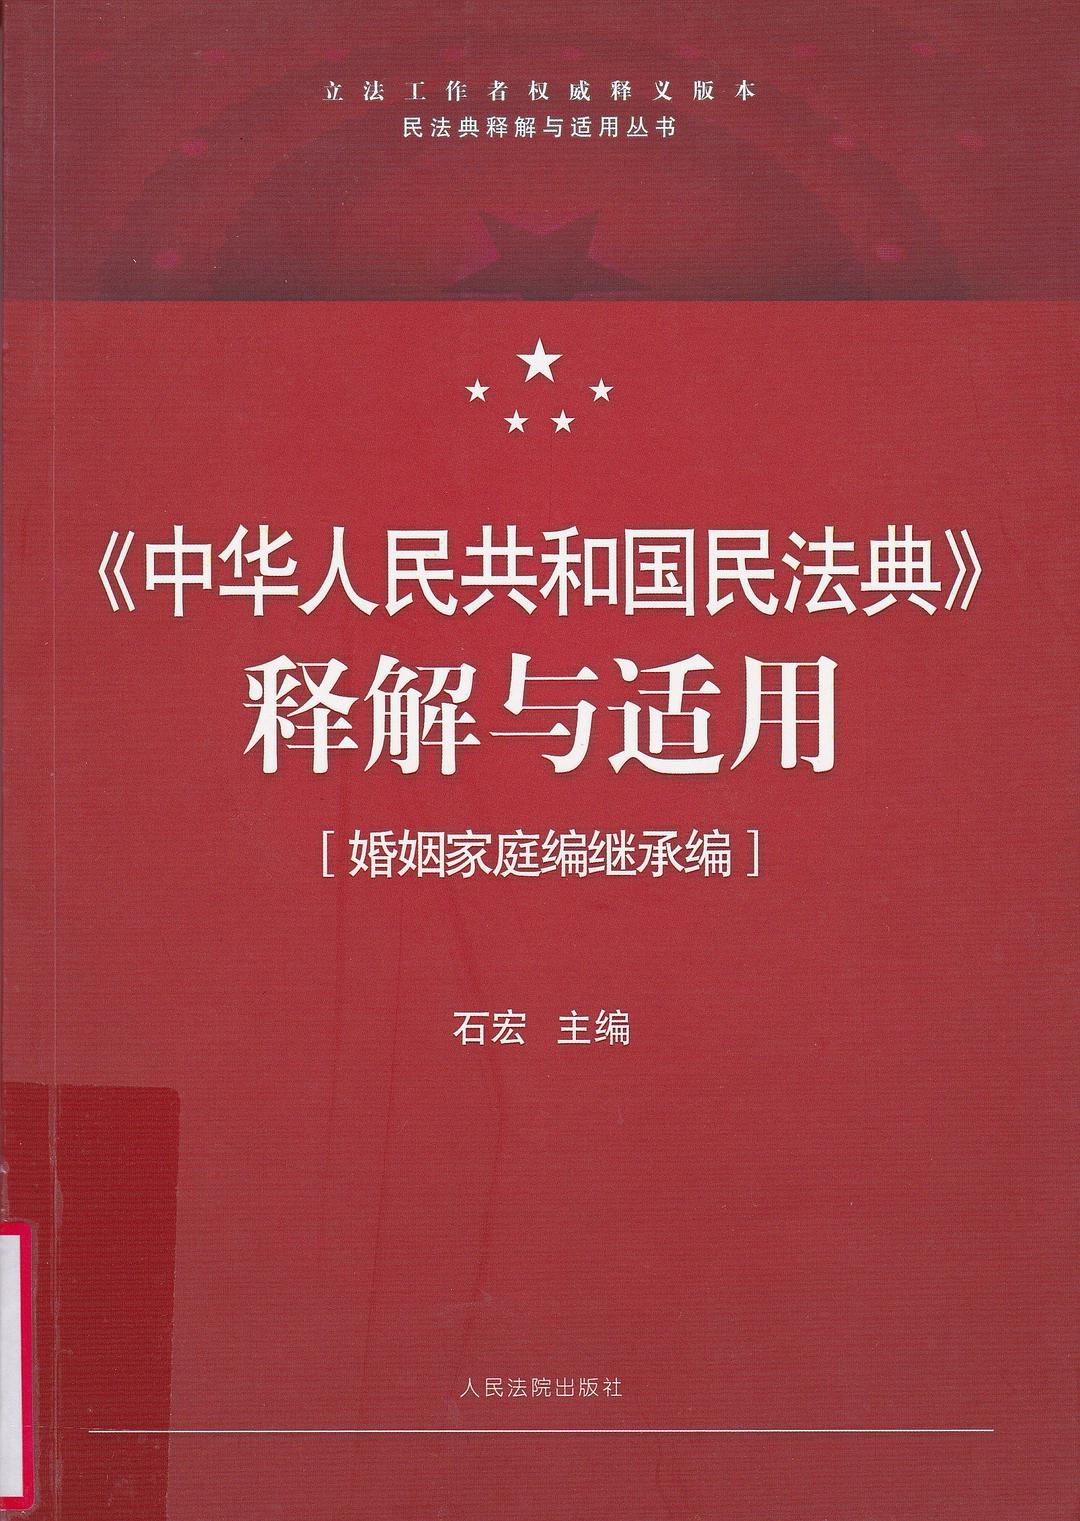 《中华人民共和国民法典》释解与适用 婚姻家庭编继承编